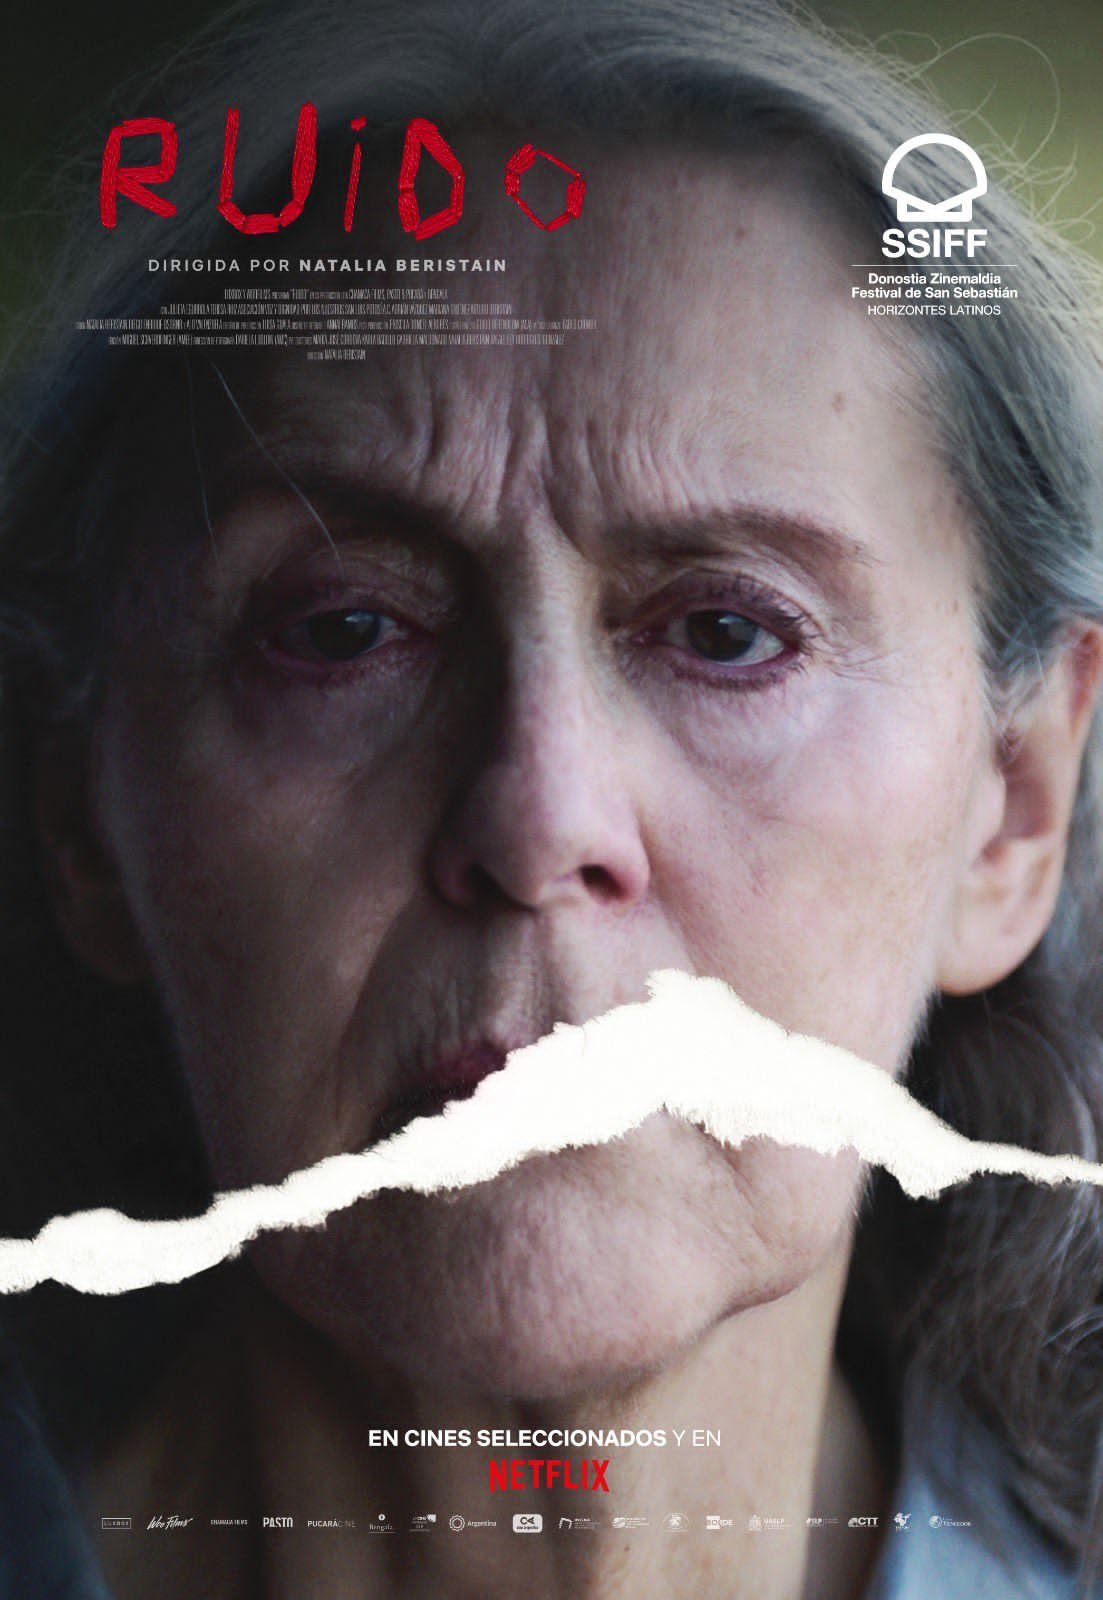 Del 05 al 08 de enero se proyectará “White Noise” (Ruido de fondo) 2022, un filme estadounidense cargado de drama y terror